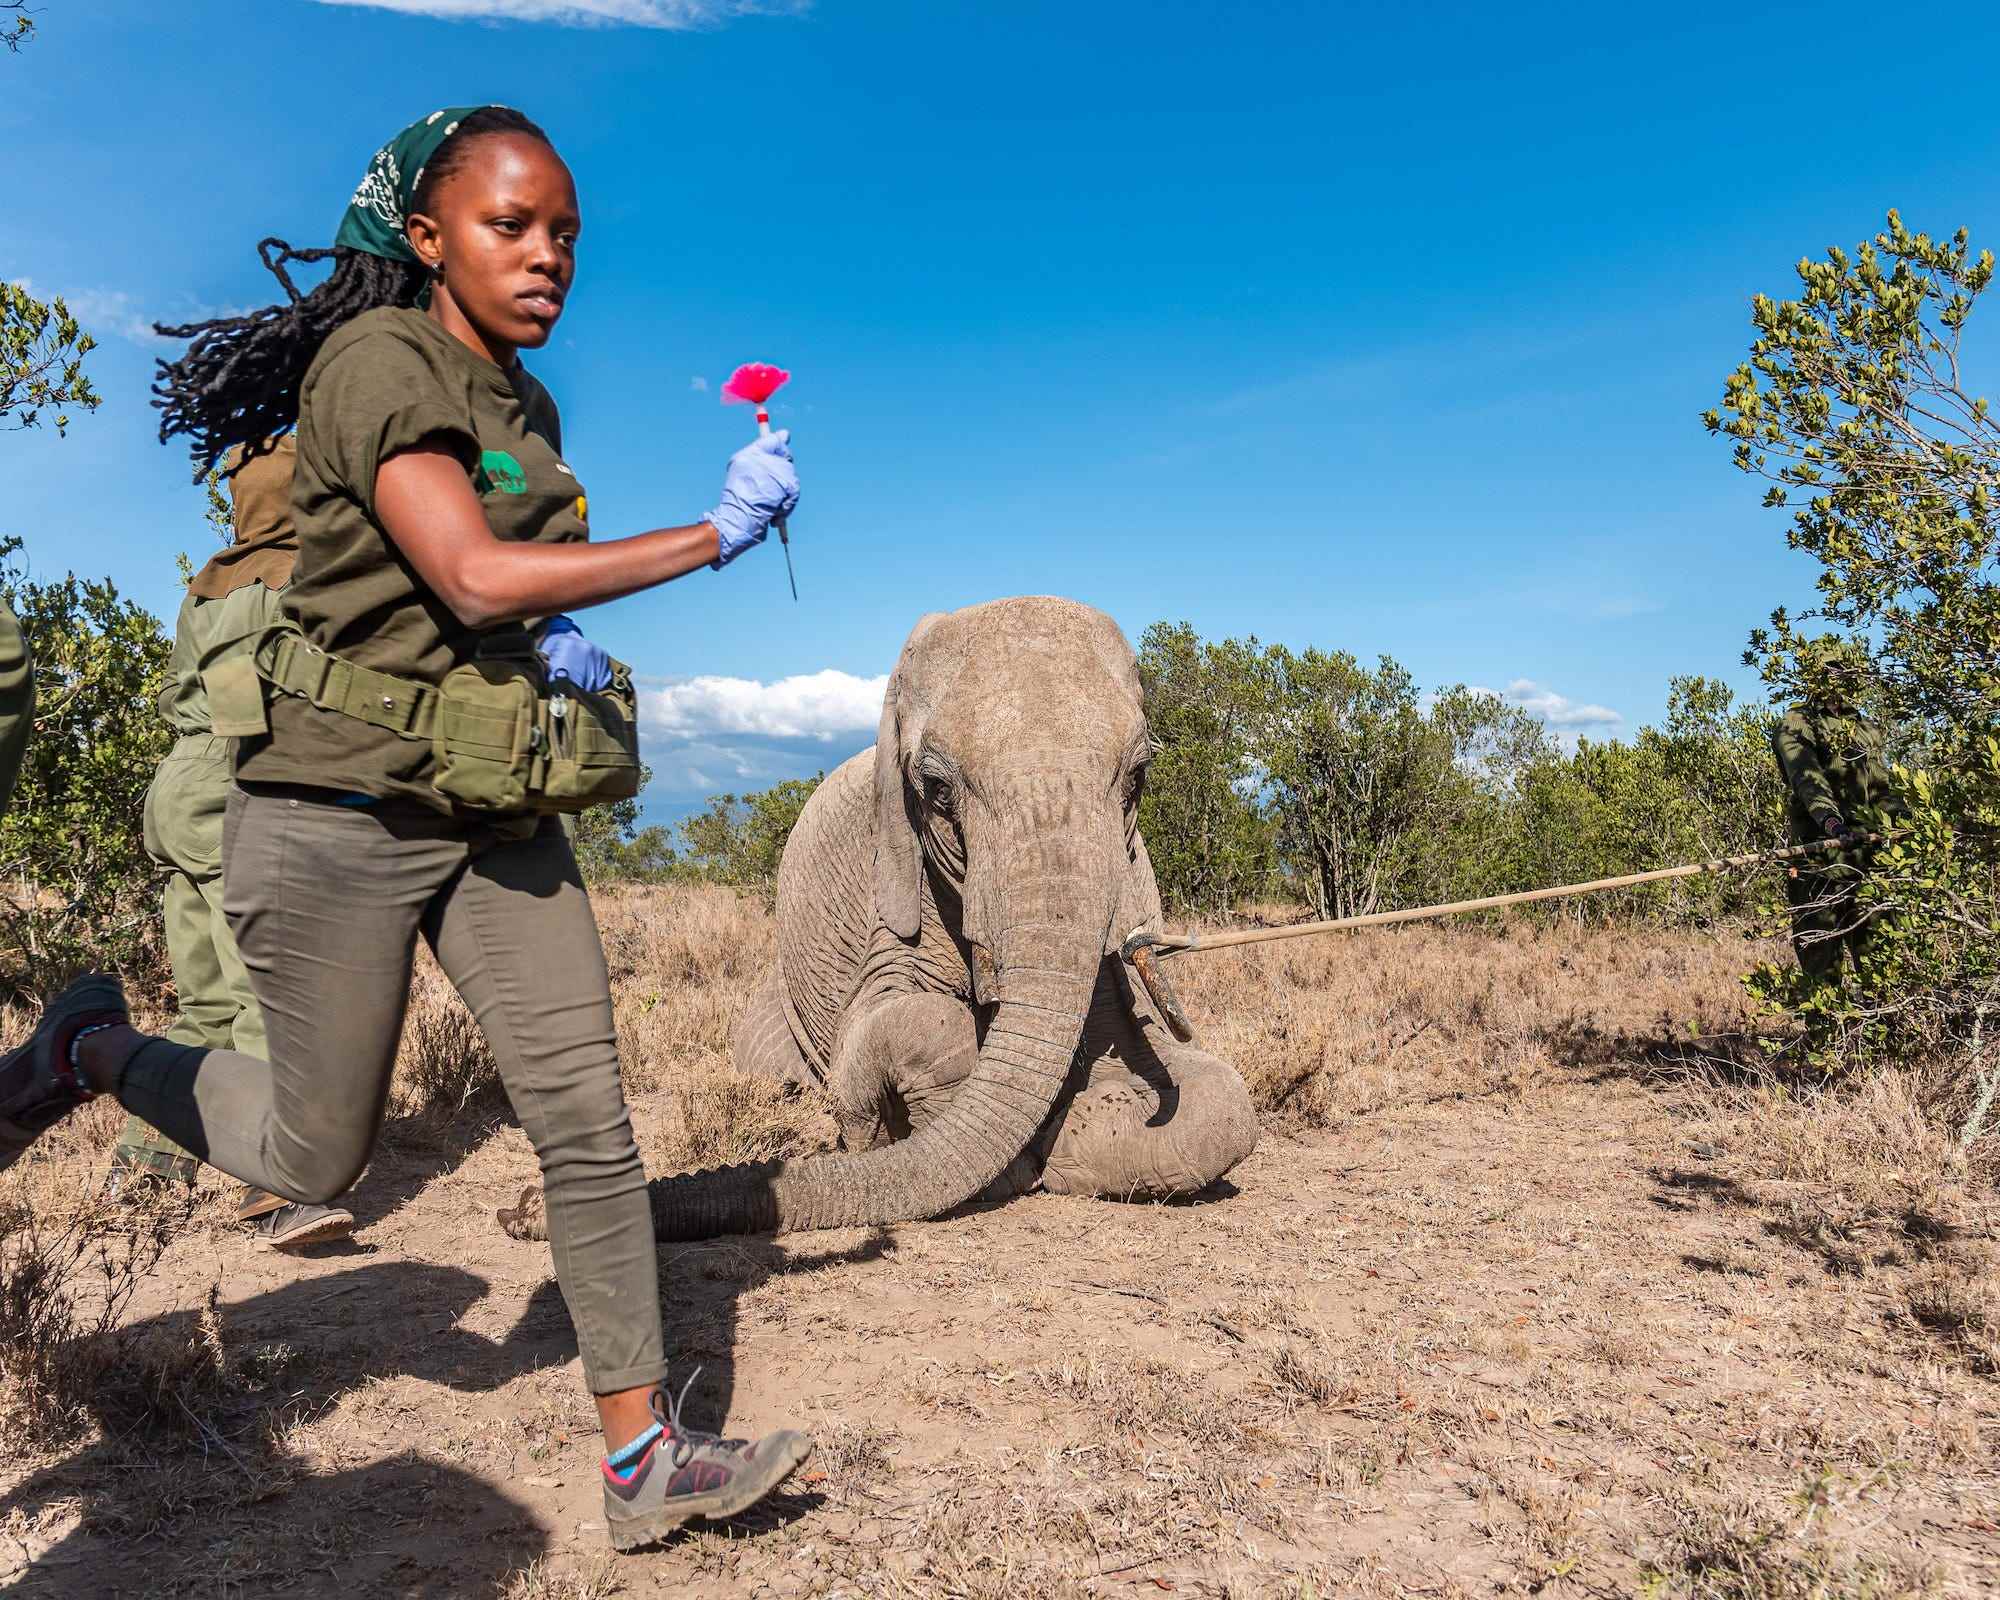 Frau läuft mit Pfeil vor Elefanten auf den Knien auf dem Boden